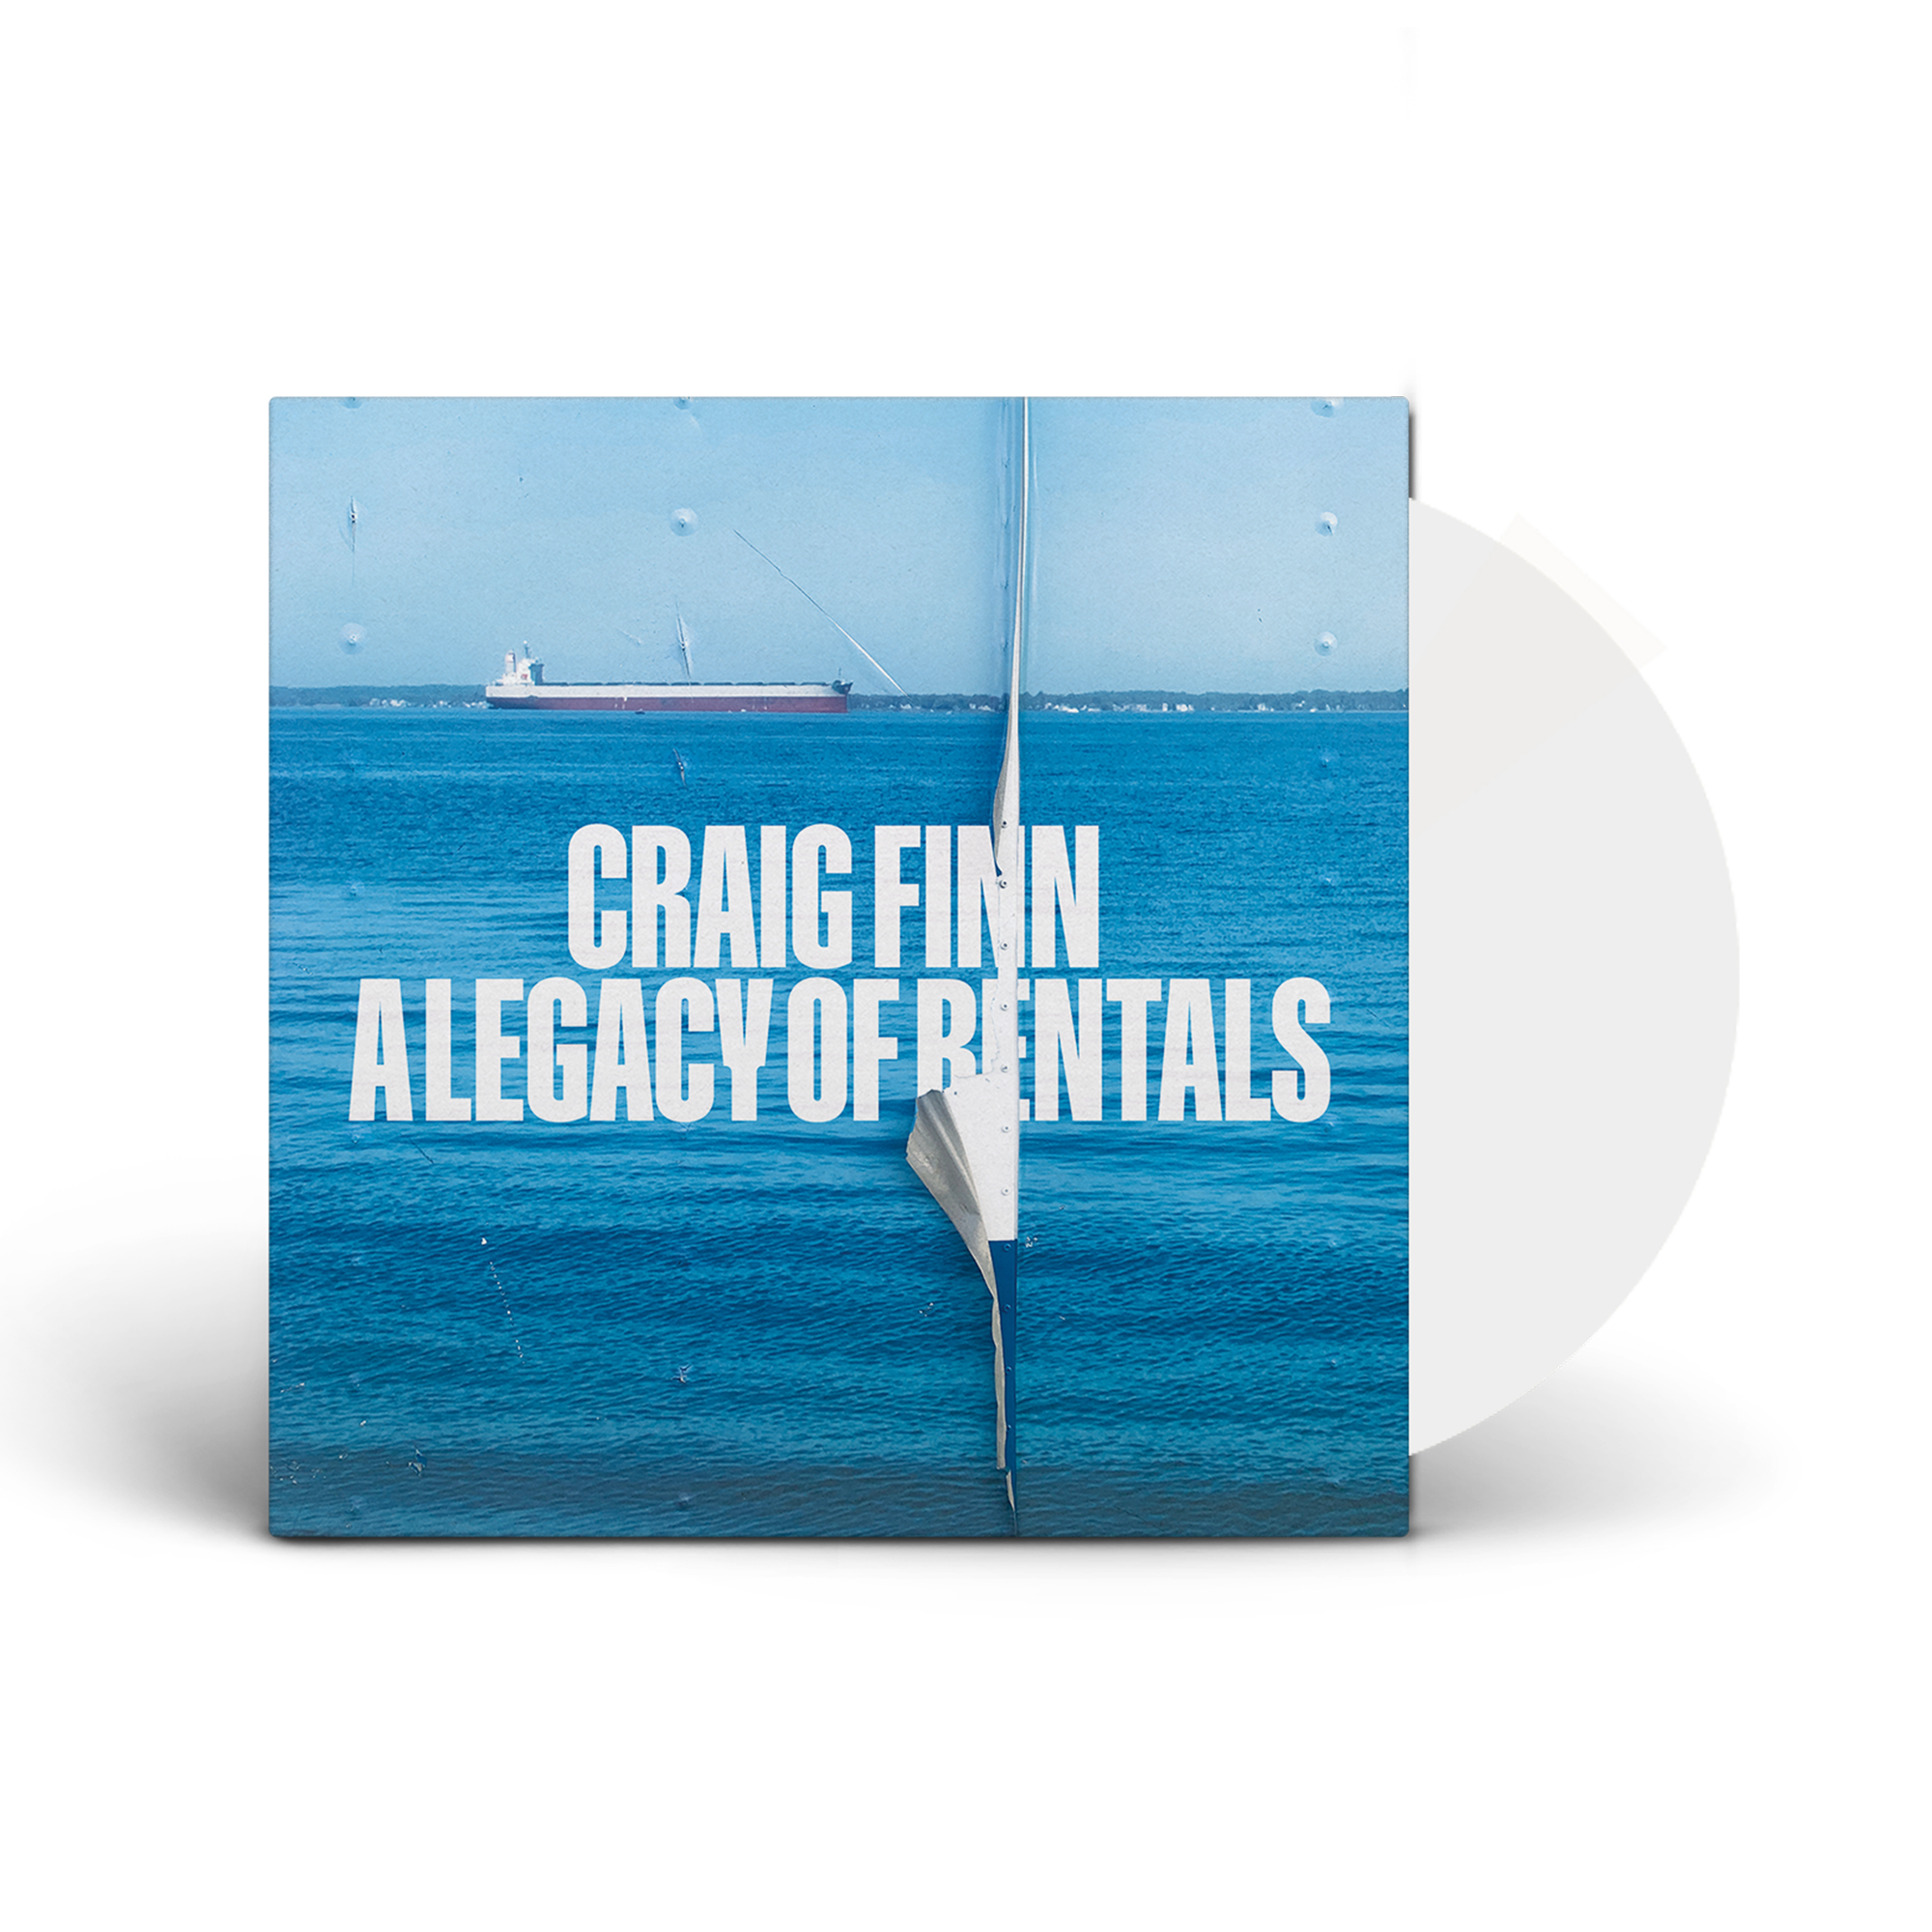 Craig Finn - A Legacy of Rentals Vinyl LP (White)